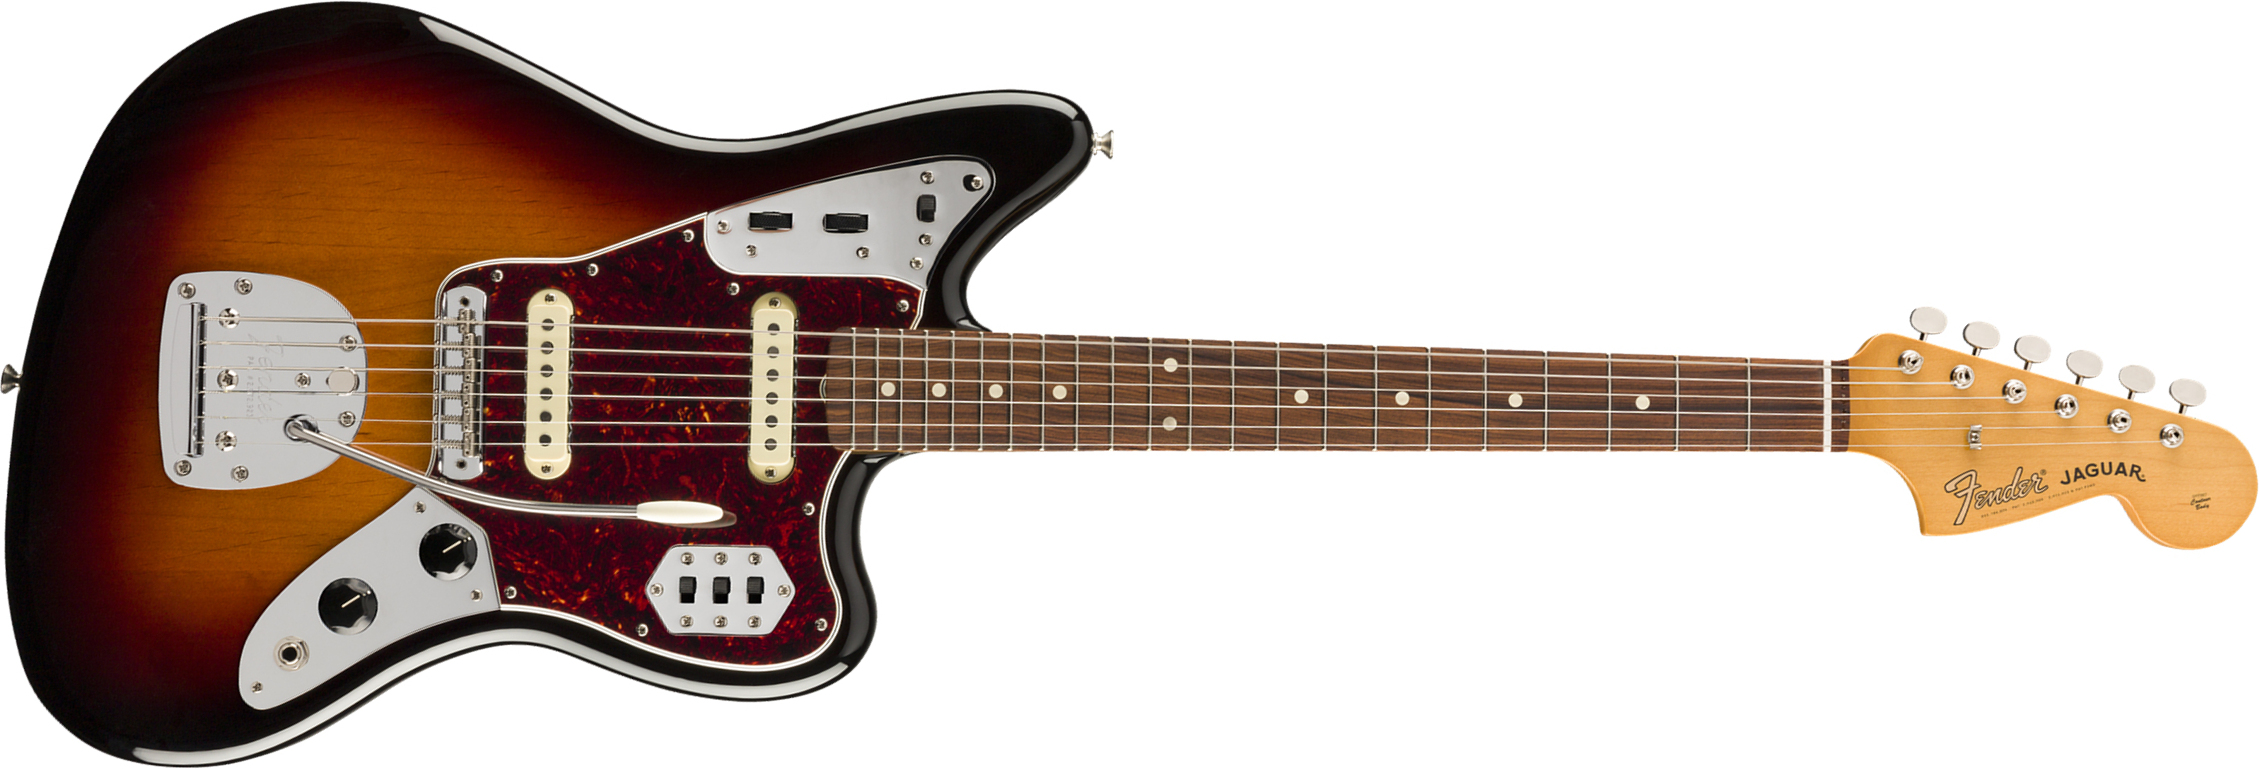 Fender Jaguar 60s Vintera Vintage Mex Pf - 3-color Sunburst - Retro-Rock-E-Gitarre - Main picture